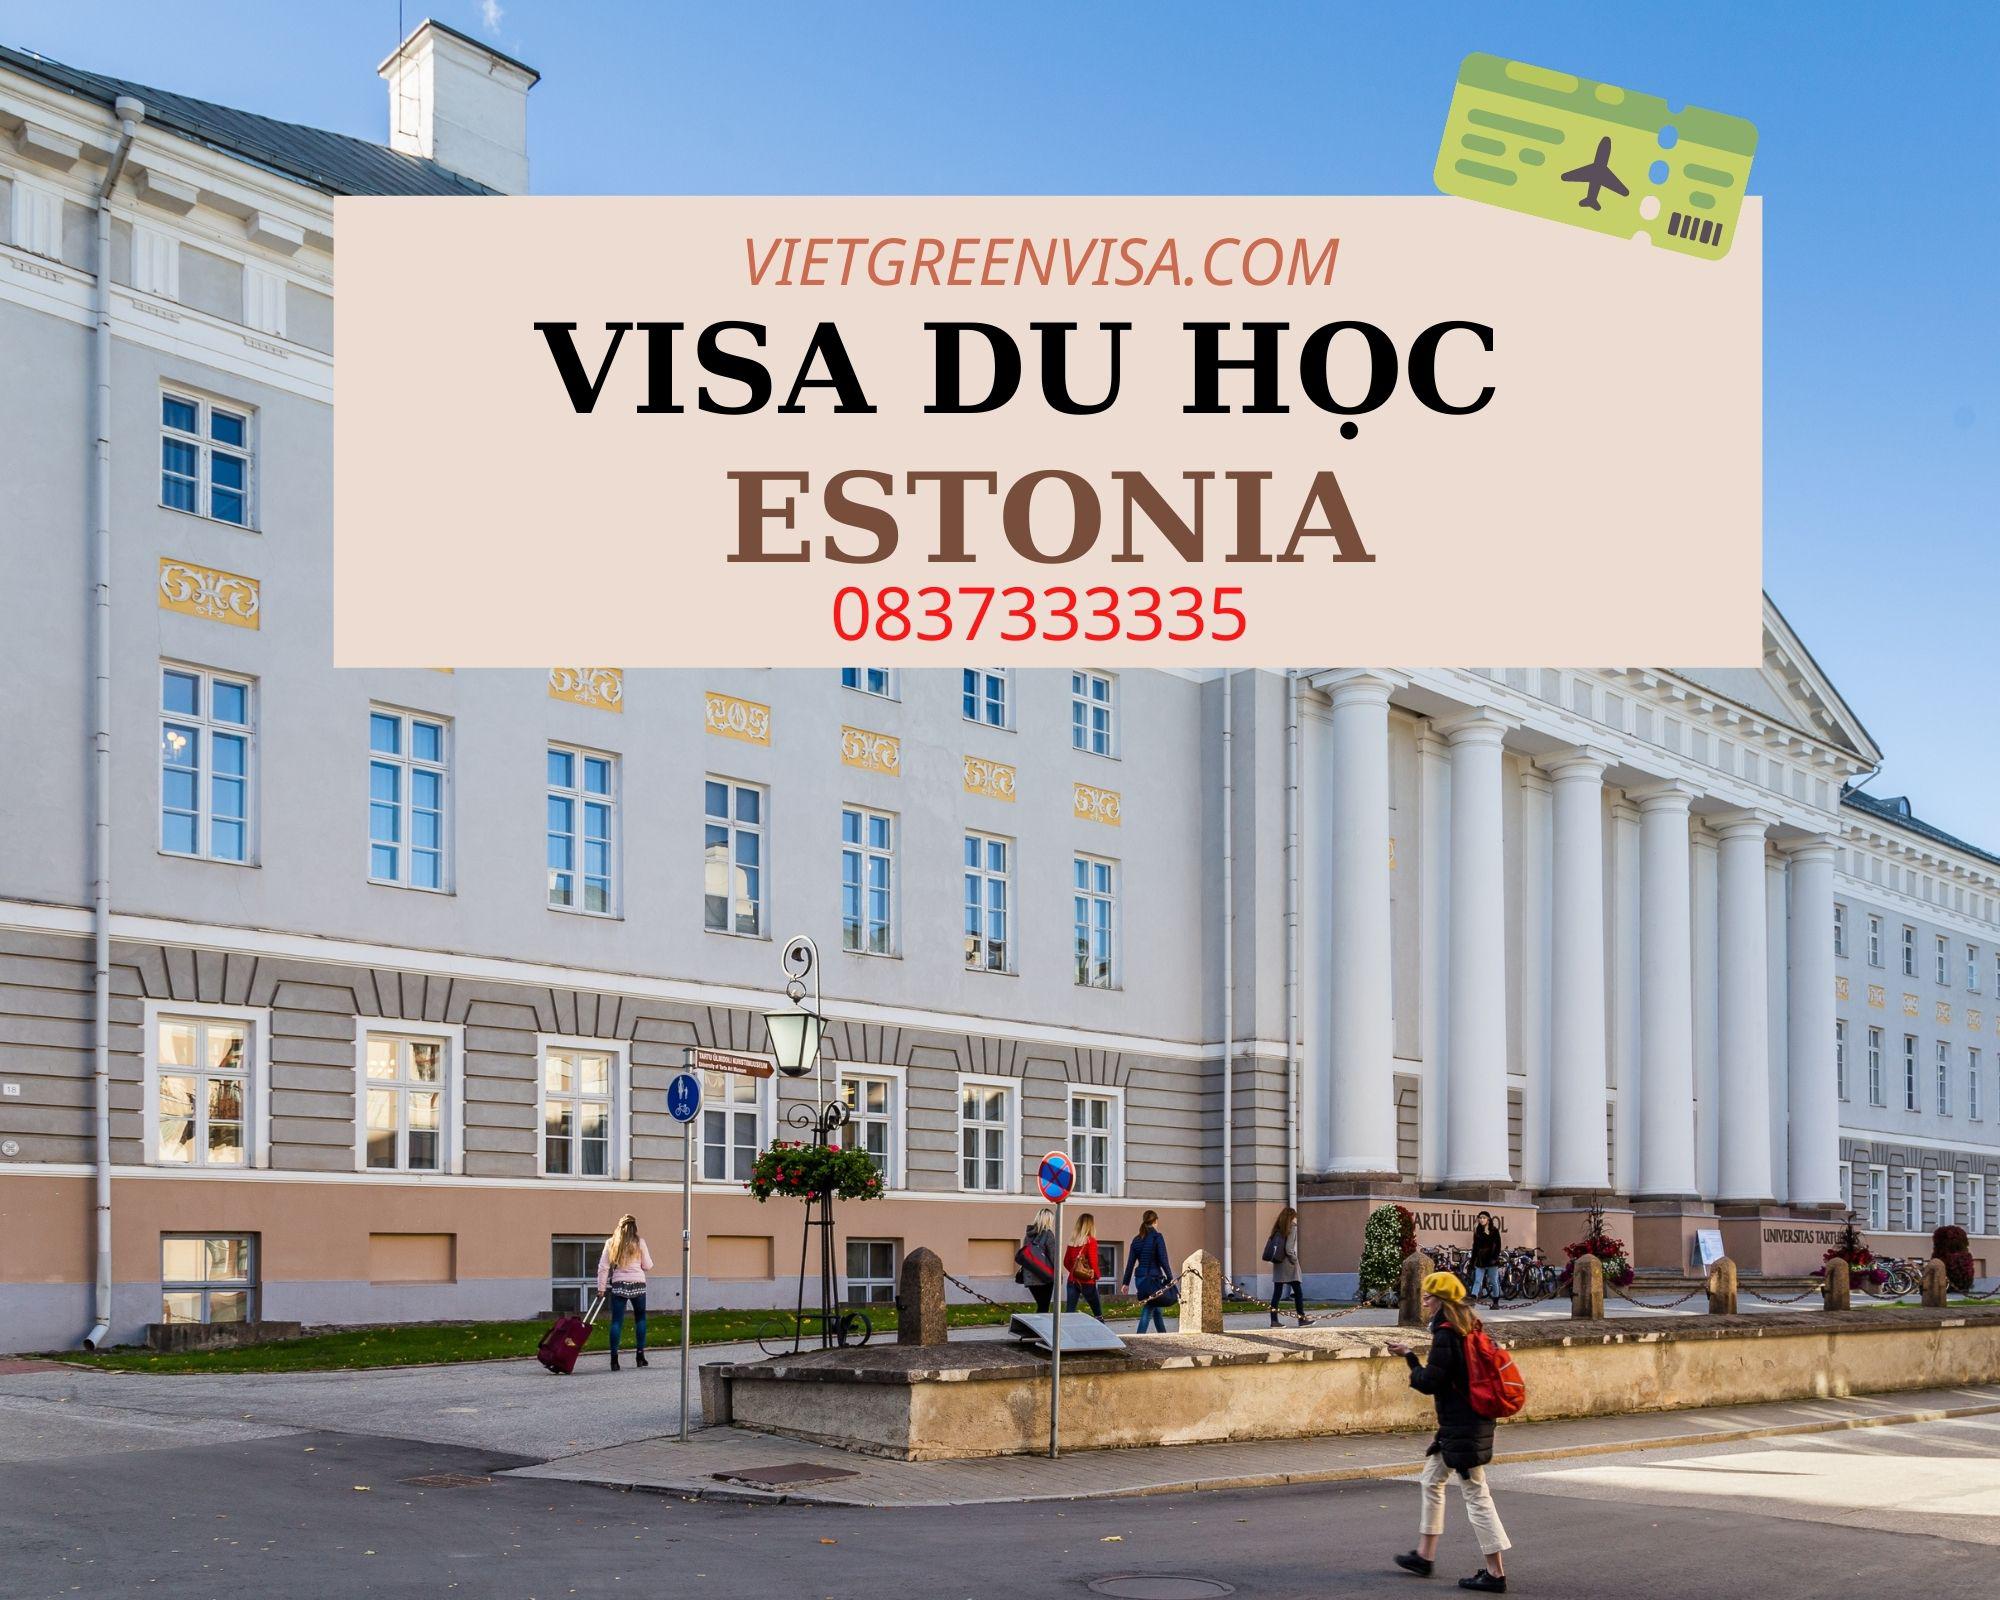 Dịch vụ tư vấn visa du học Estonia hỗ trợ từ A->Z